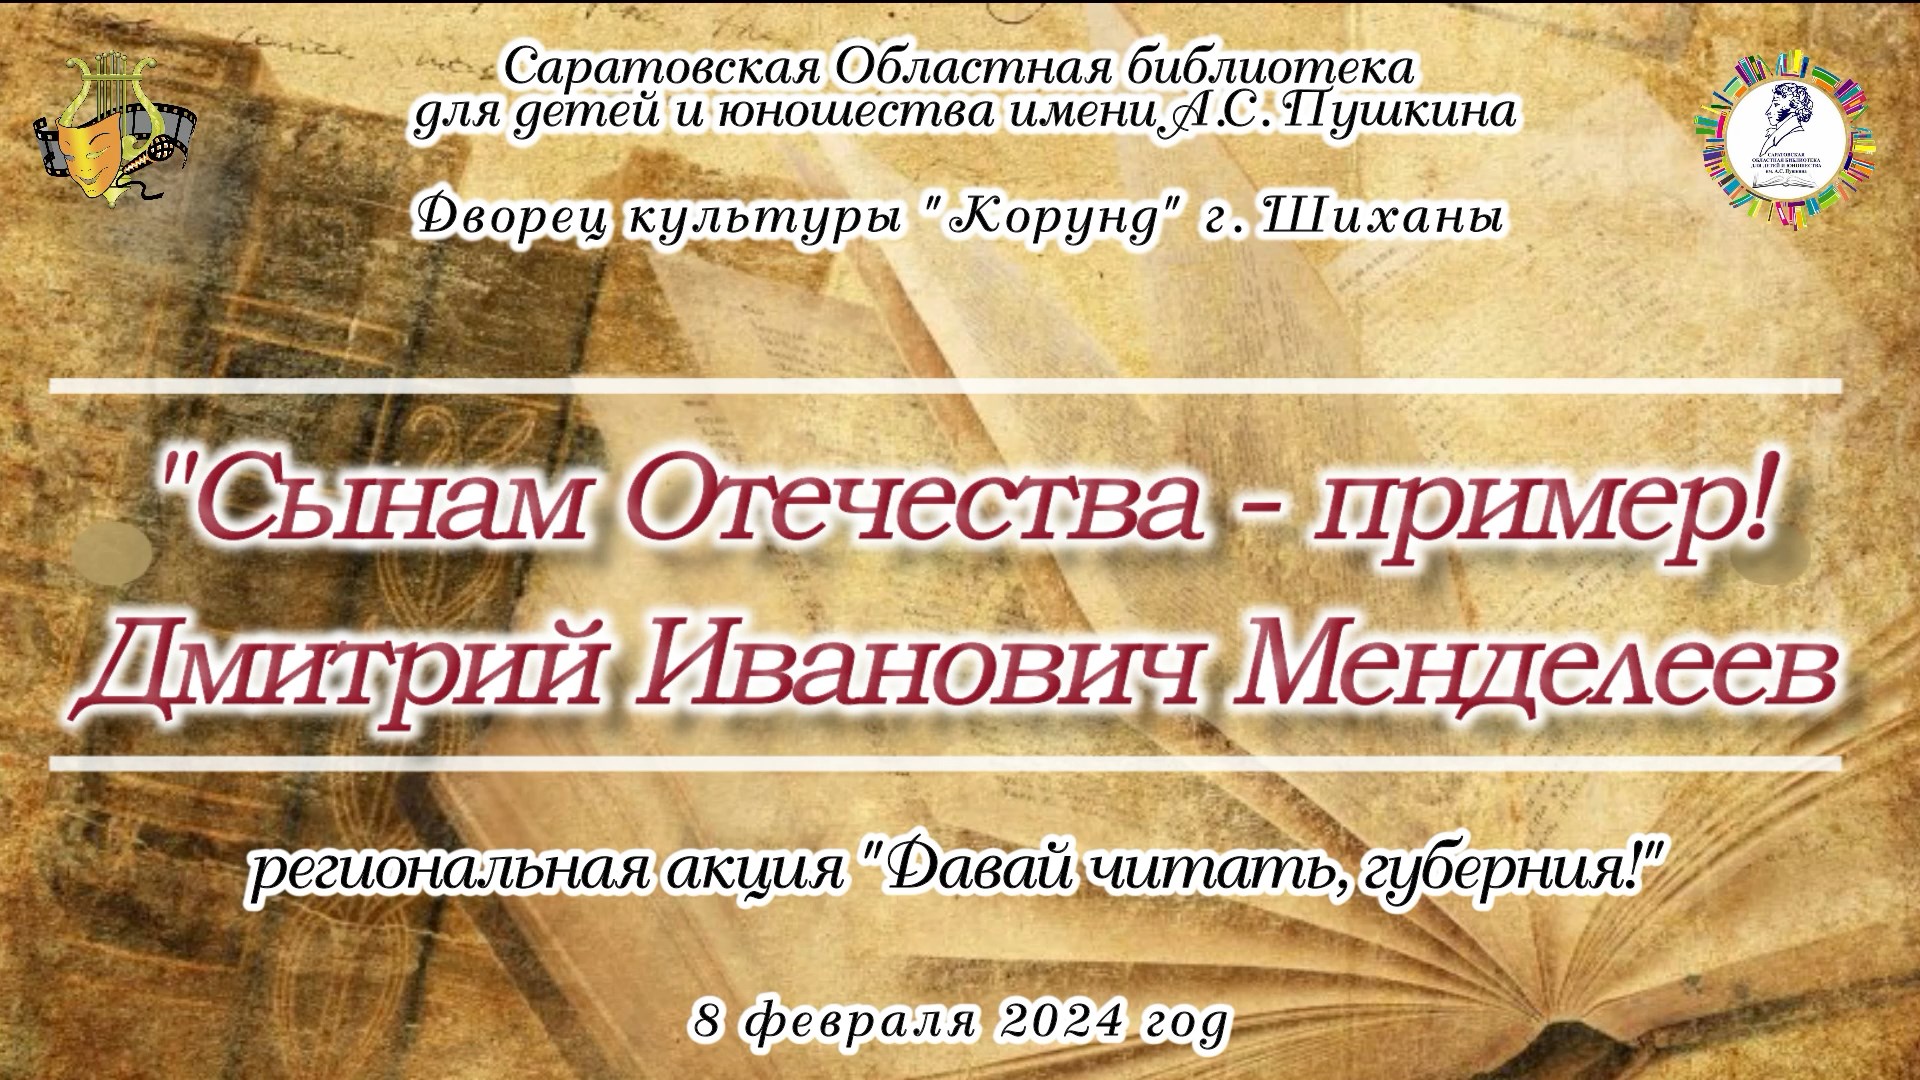 Акция "Давай читать,Губерния!" - "Сынам Отечества - пример: Д.И. Менделеев" (8.02.2024 г.)